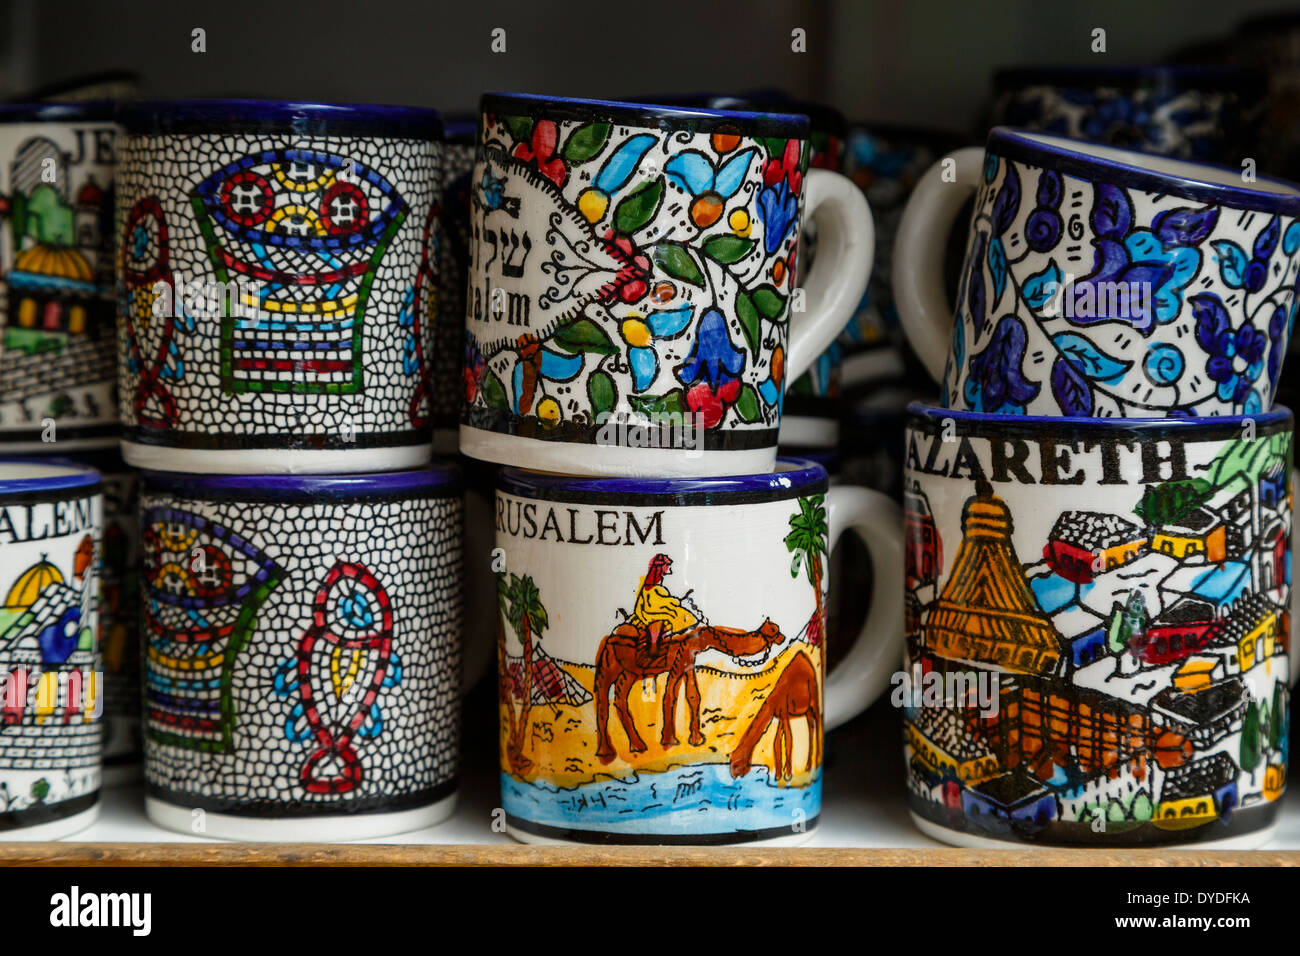 Ceramiche souvenir, Nazaret, Bassa Galilea regione, Israele. Foto Stock